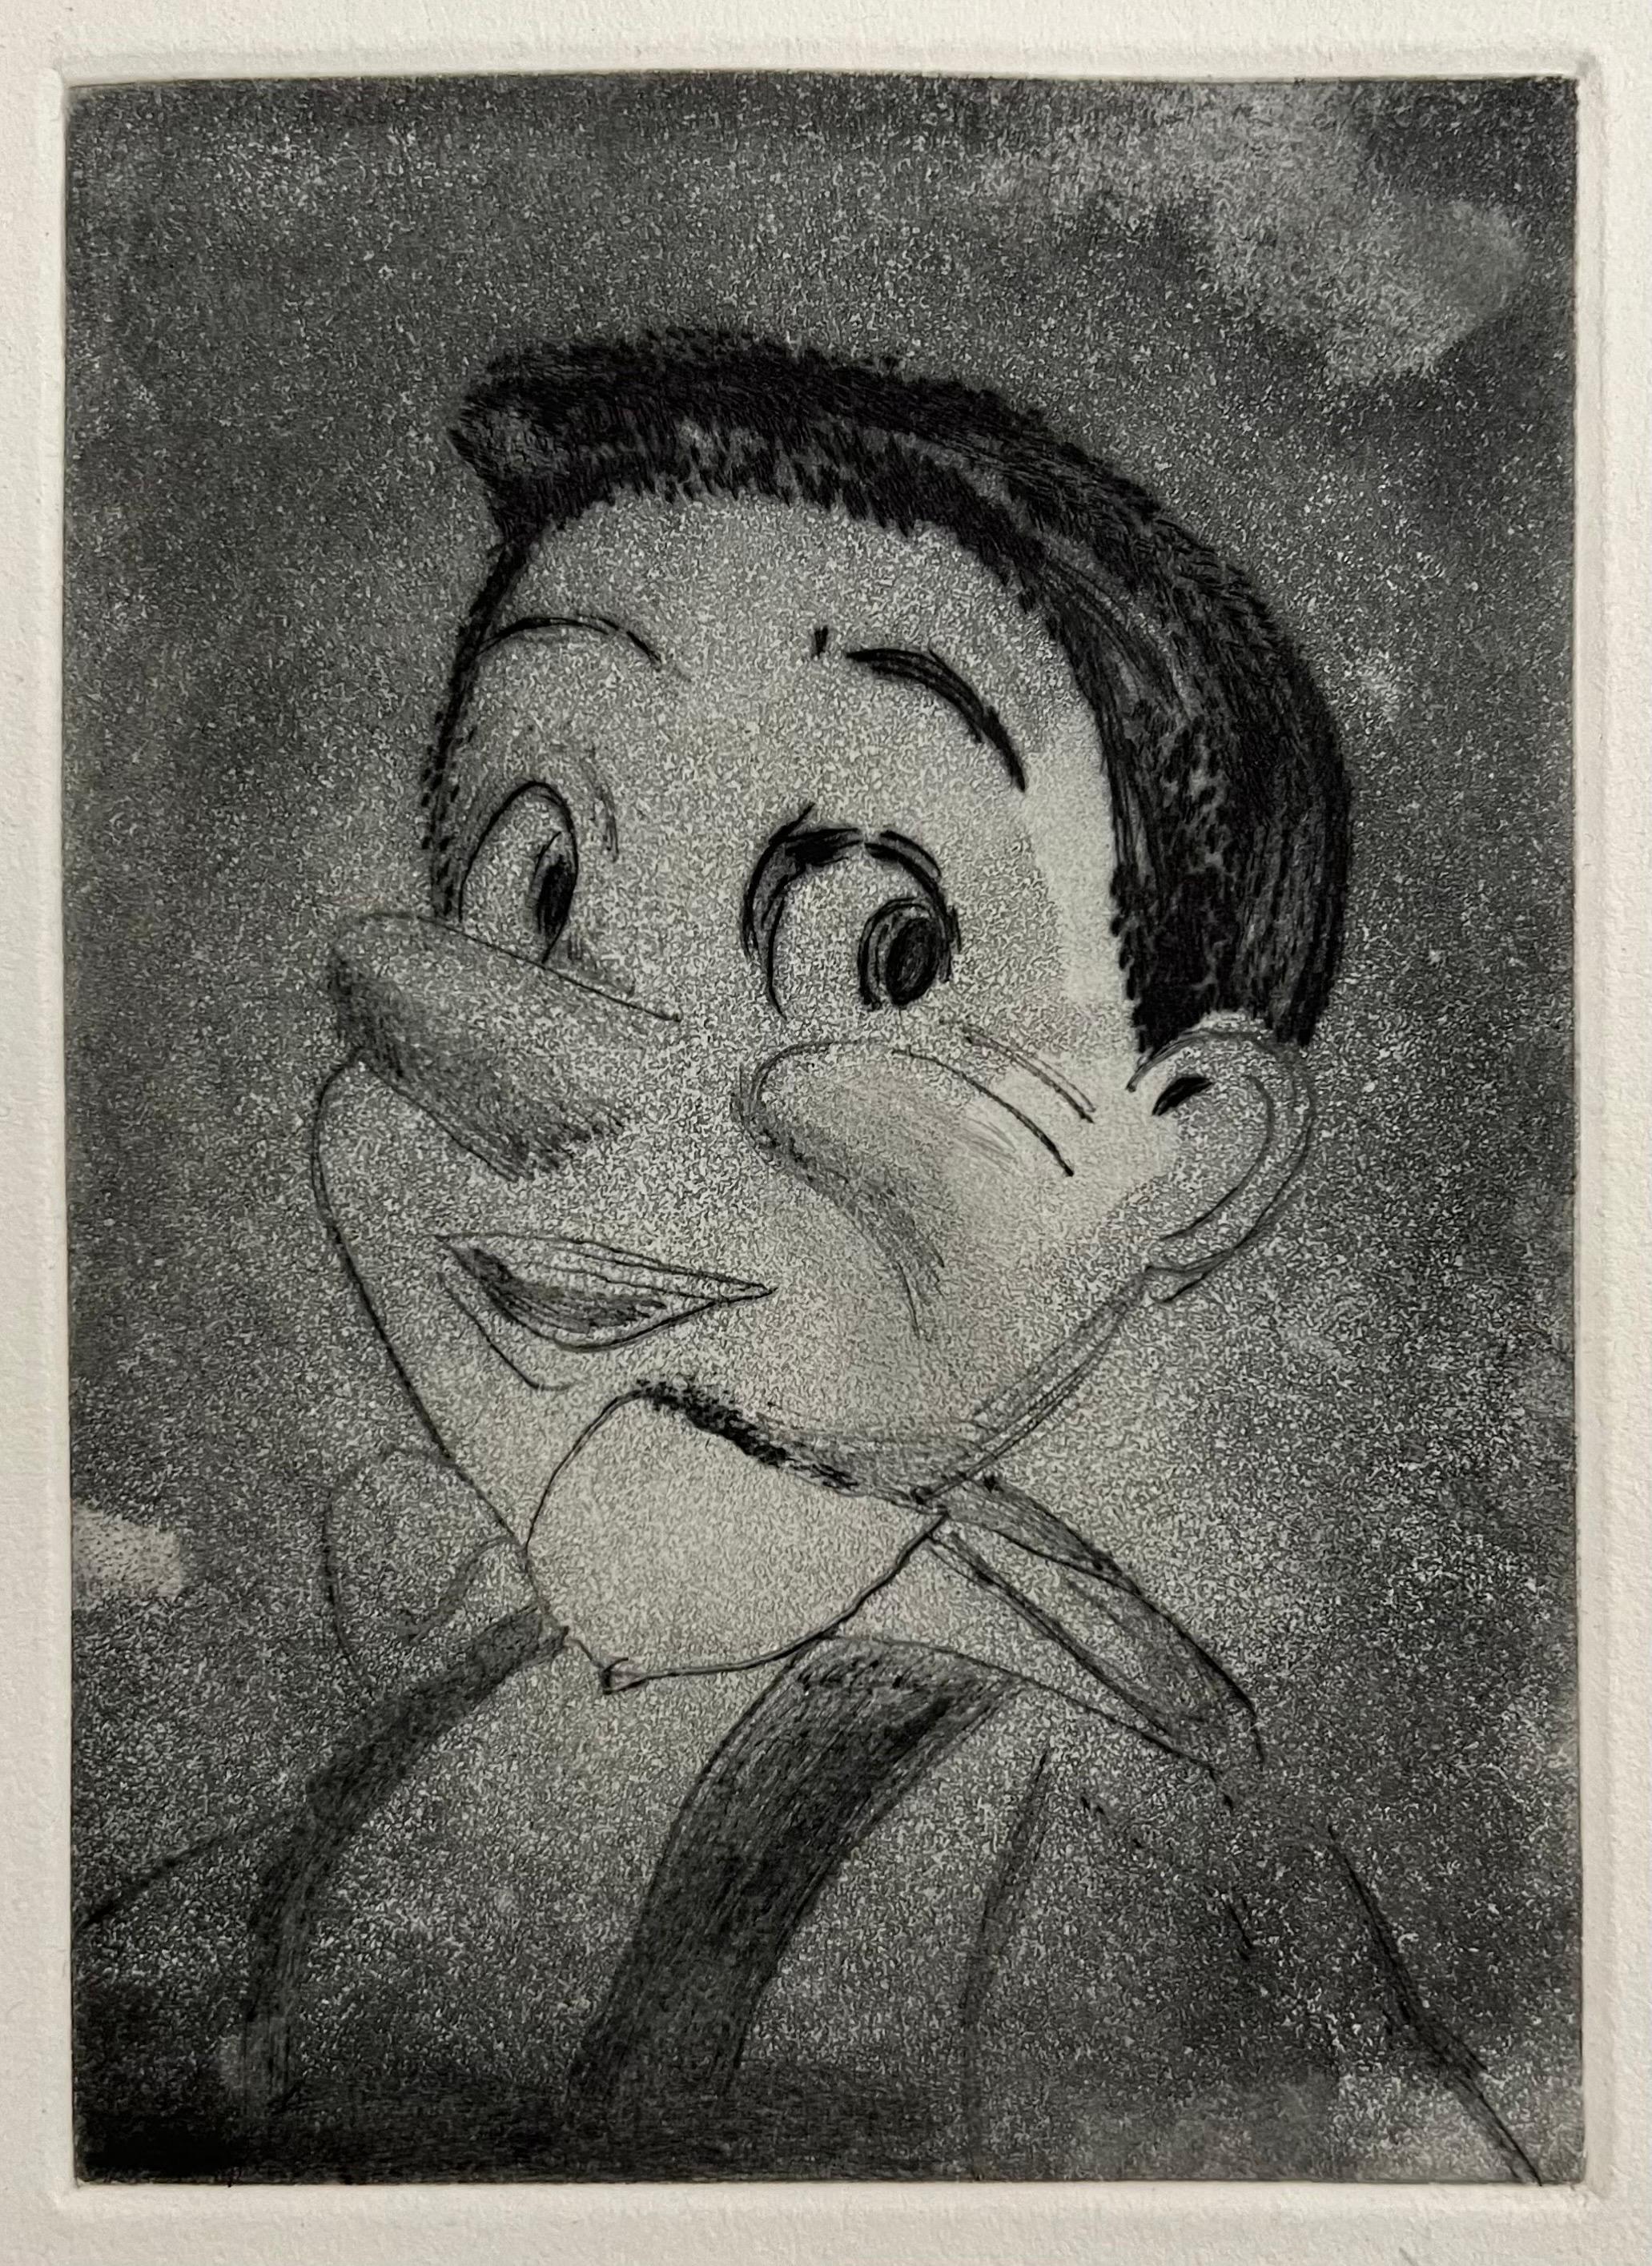 Jim Dine (Amerikaner, geb. 1935) 
Radierung mit der Darstellung von Pinocchio
Veröffentlicht von Enitharmon Press für Whitman College, London 1999
Handsigniert mit Bleistift unten rechts. Maße 9" x 7" Blattgröße
Dieses Exemplar ist nicht nummeriert